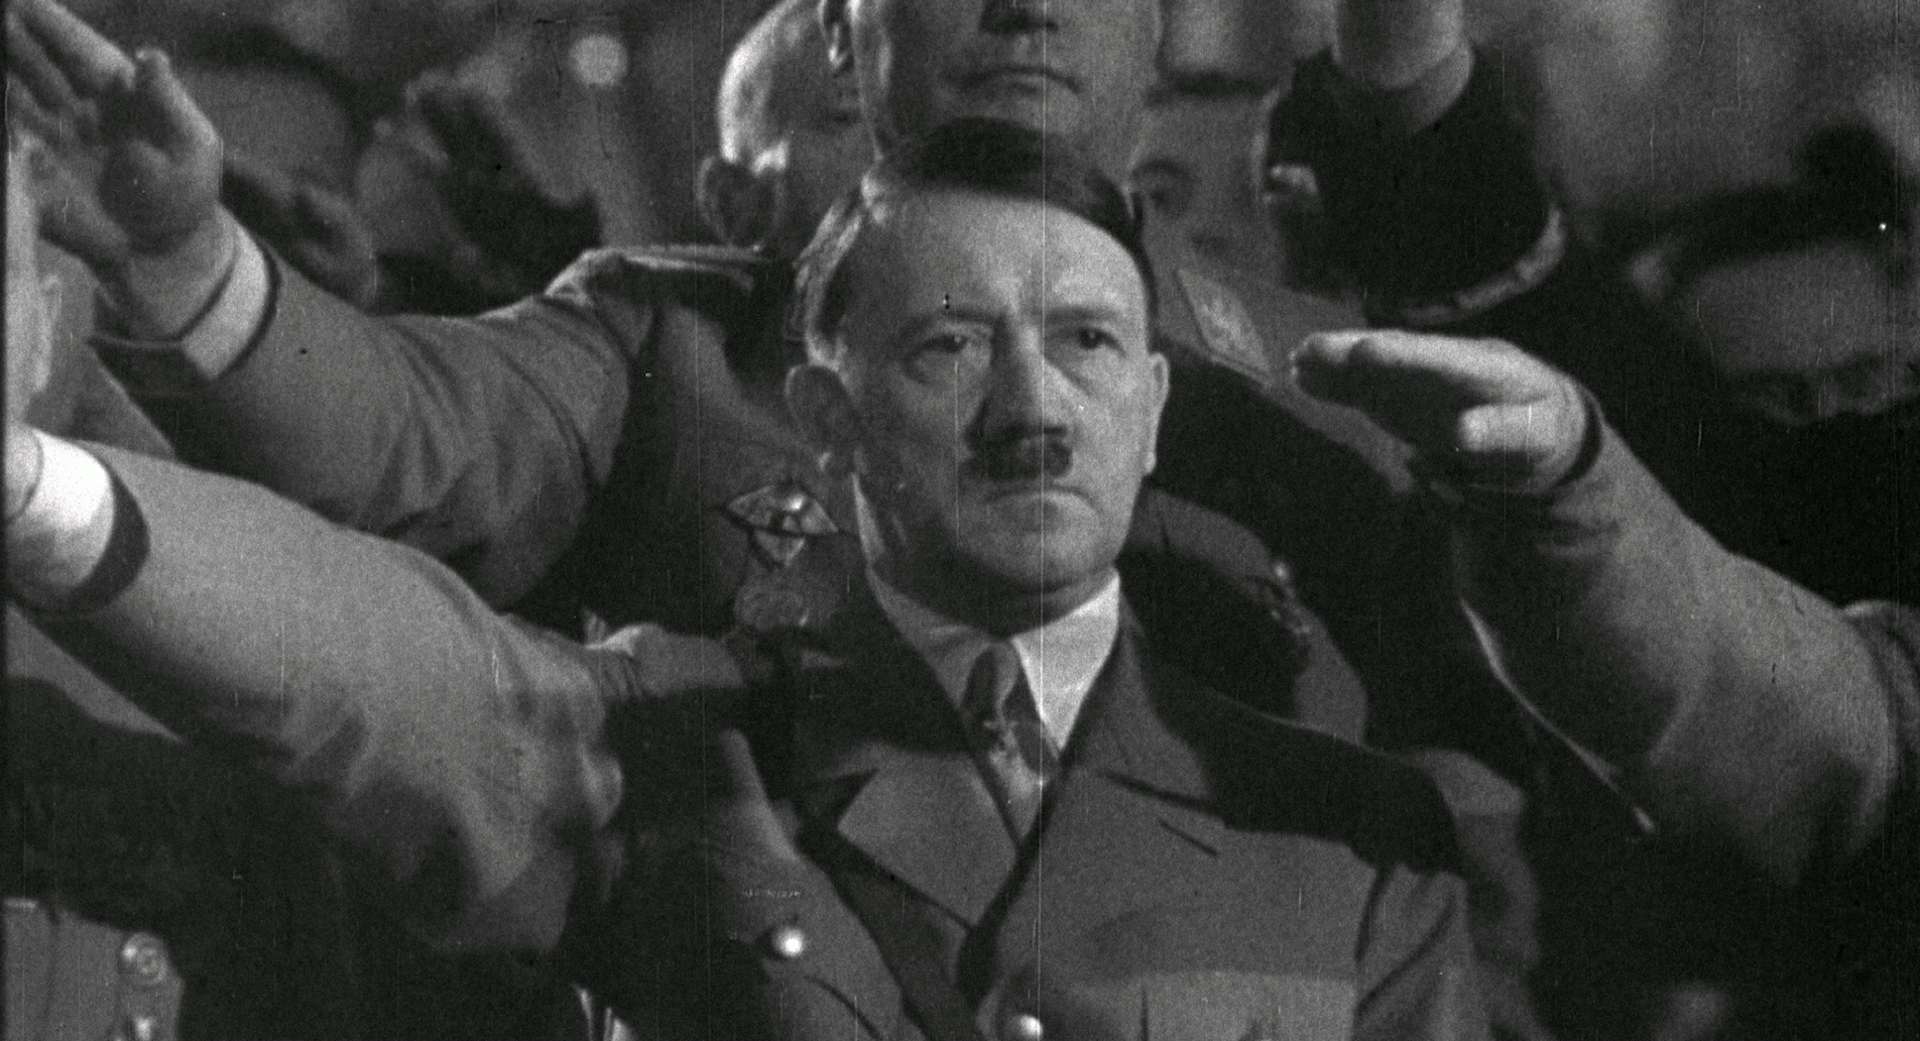 ヒトラーによる美術品略奪の歴史を紐解く 映画 ヒトラーvs ピカソ 奪われた名画のゆくえ が19年4月に公開 美術手帖